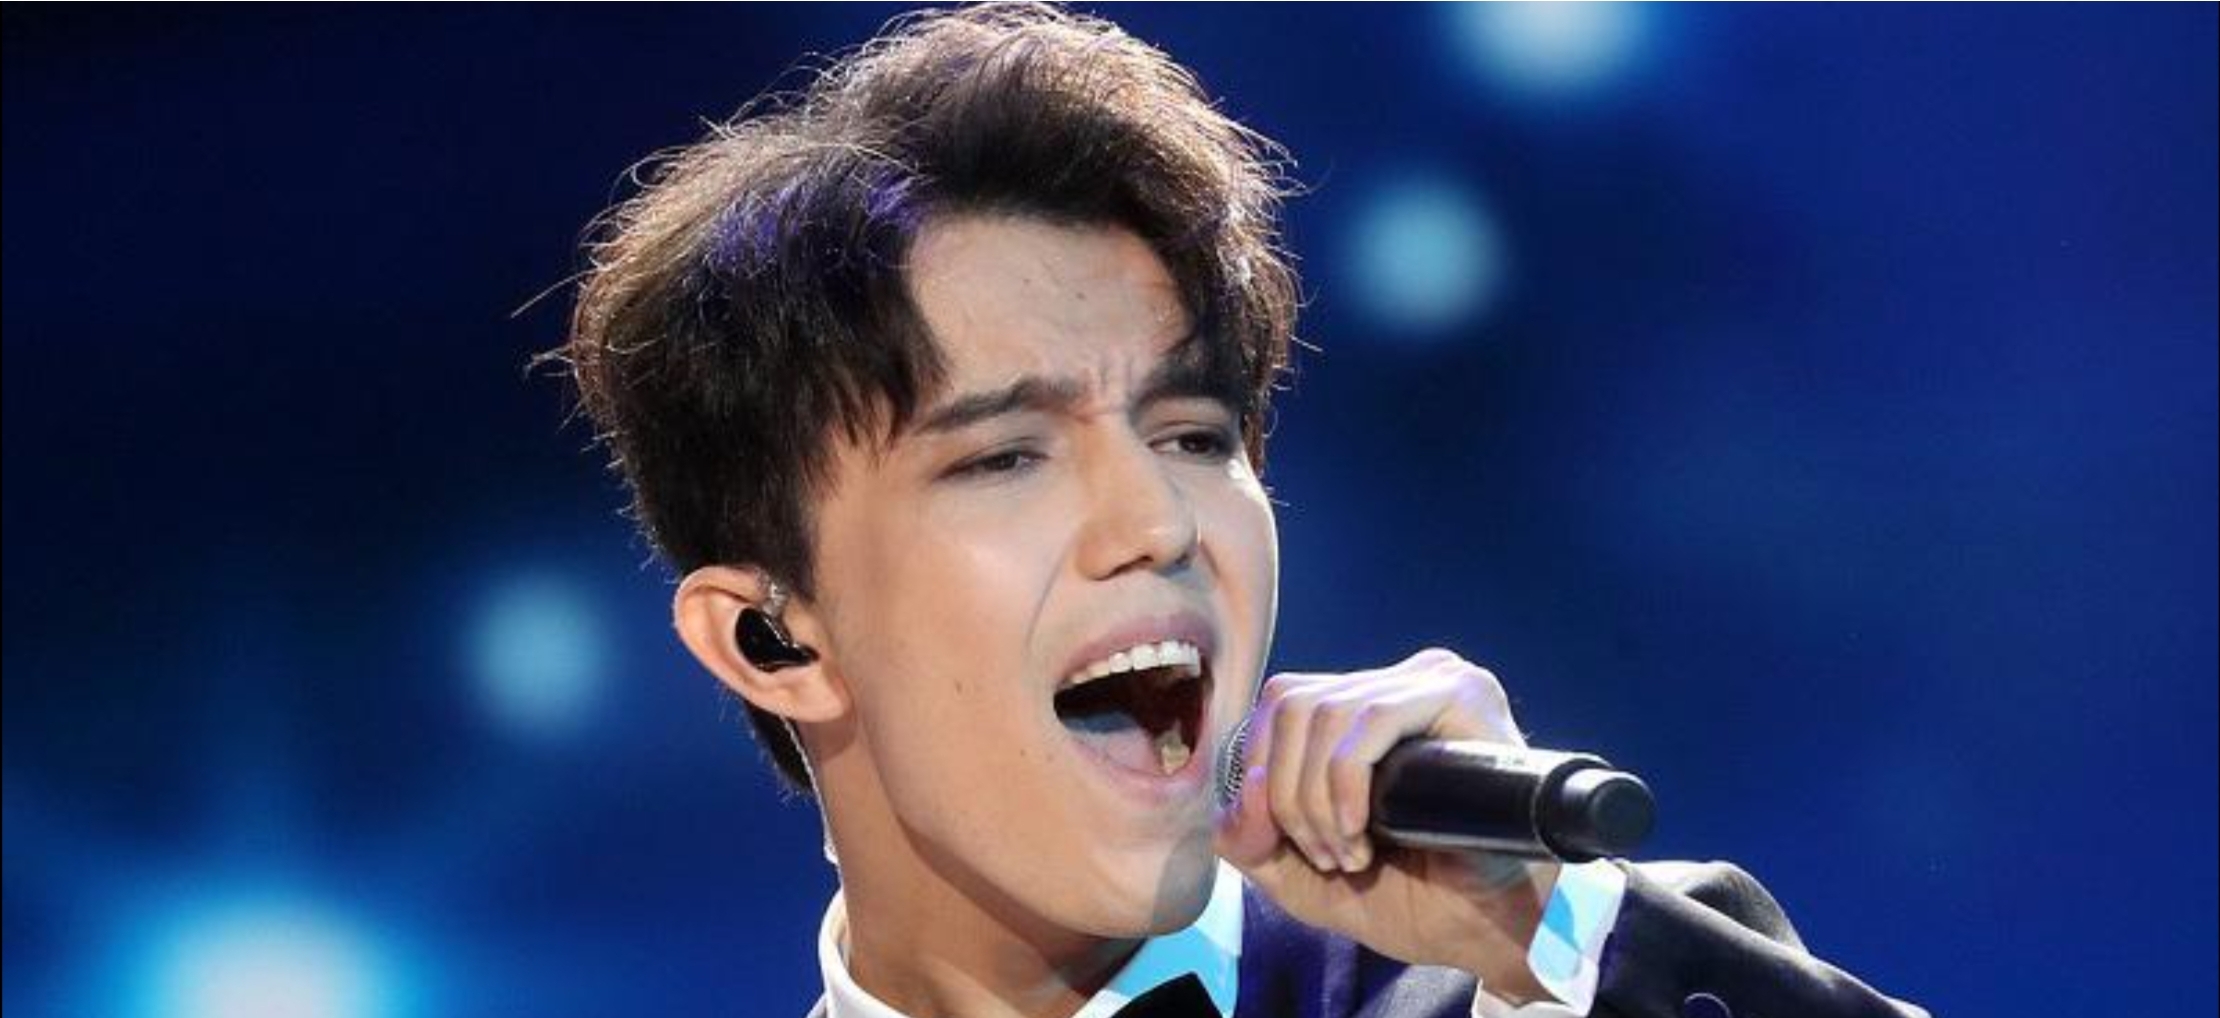 молодые певцы казахстана список лучших